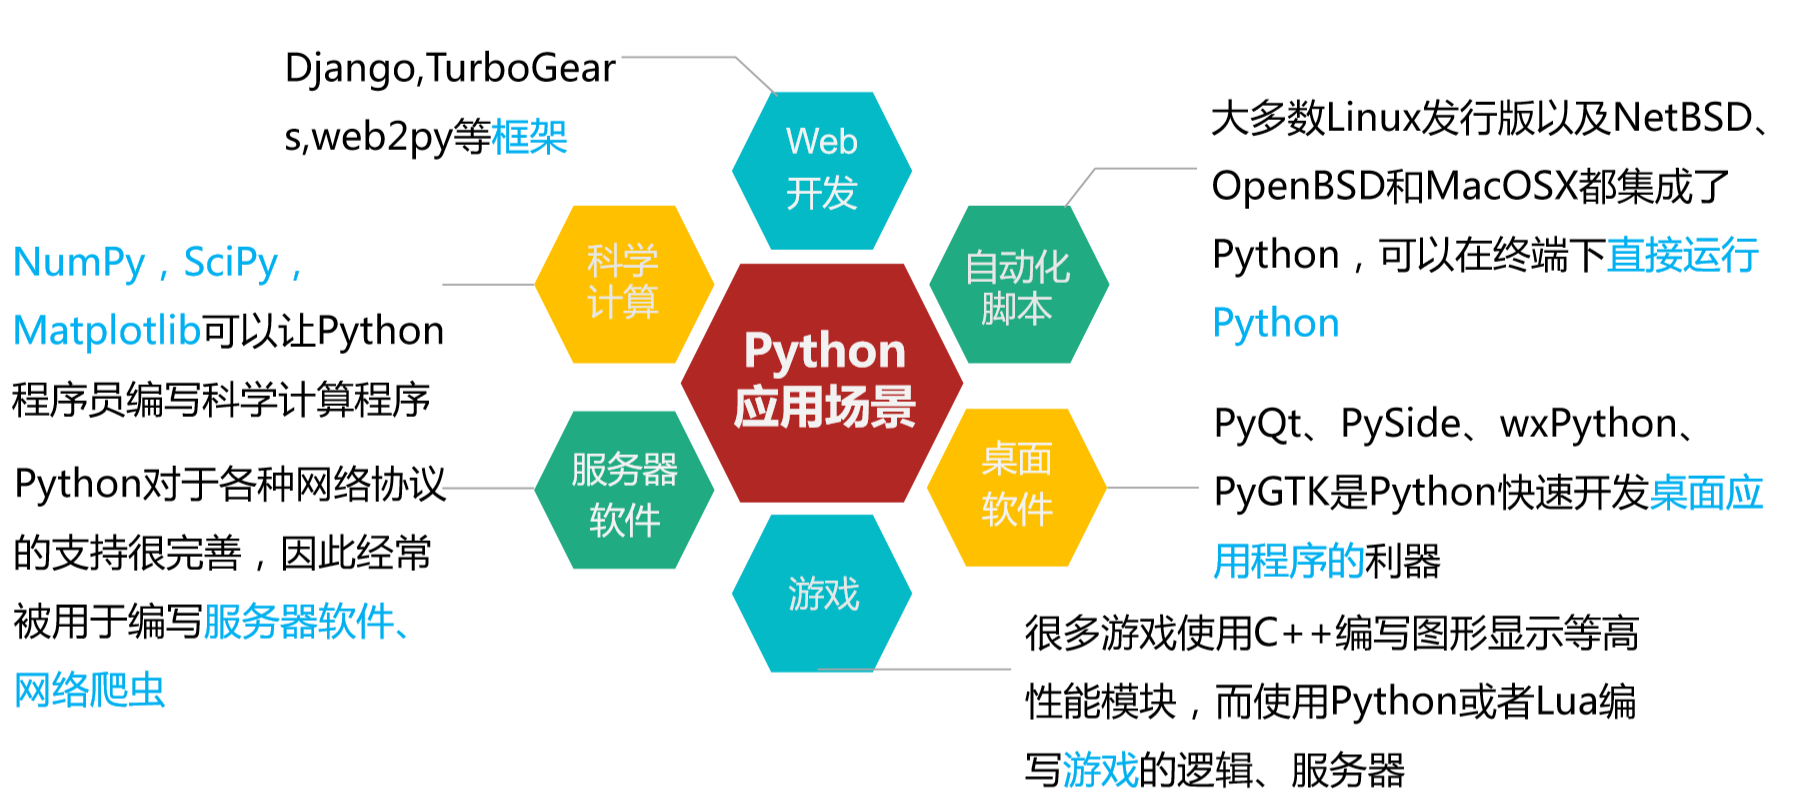 关于python企业网站建设的信息